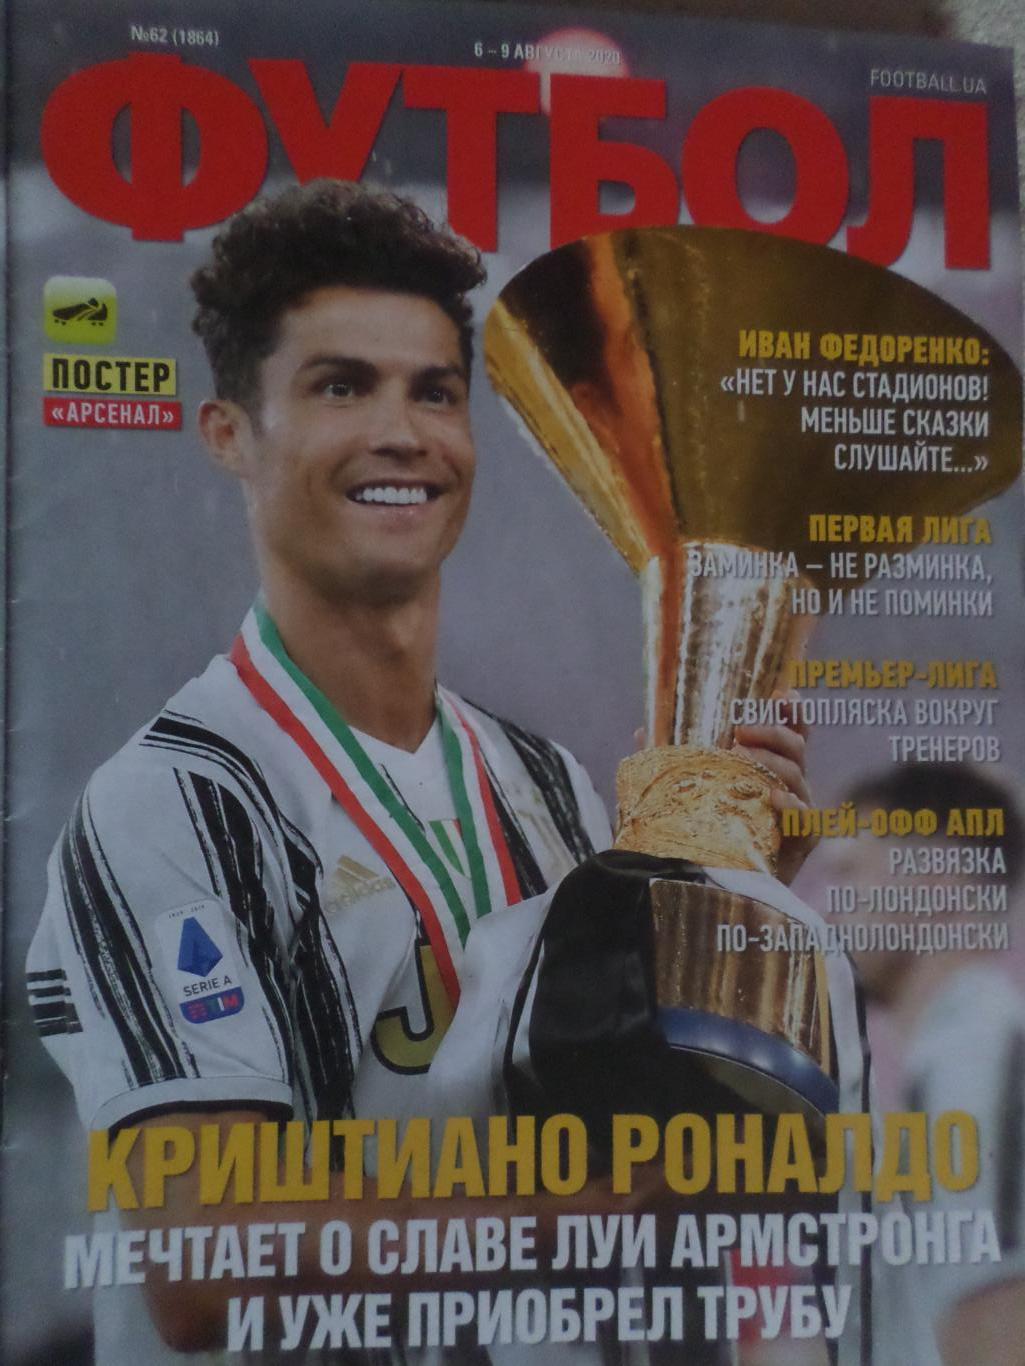 Еженедельник Футбол, Киев, № 62 2020 год